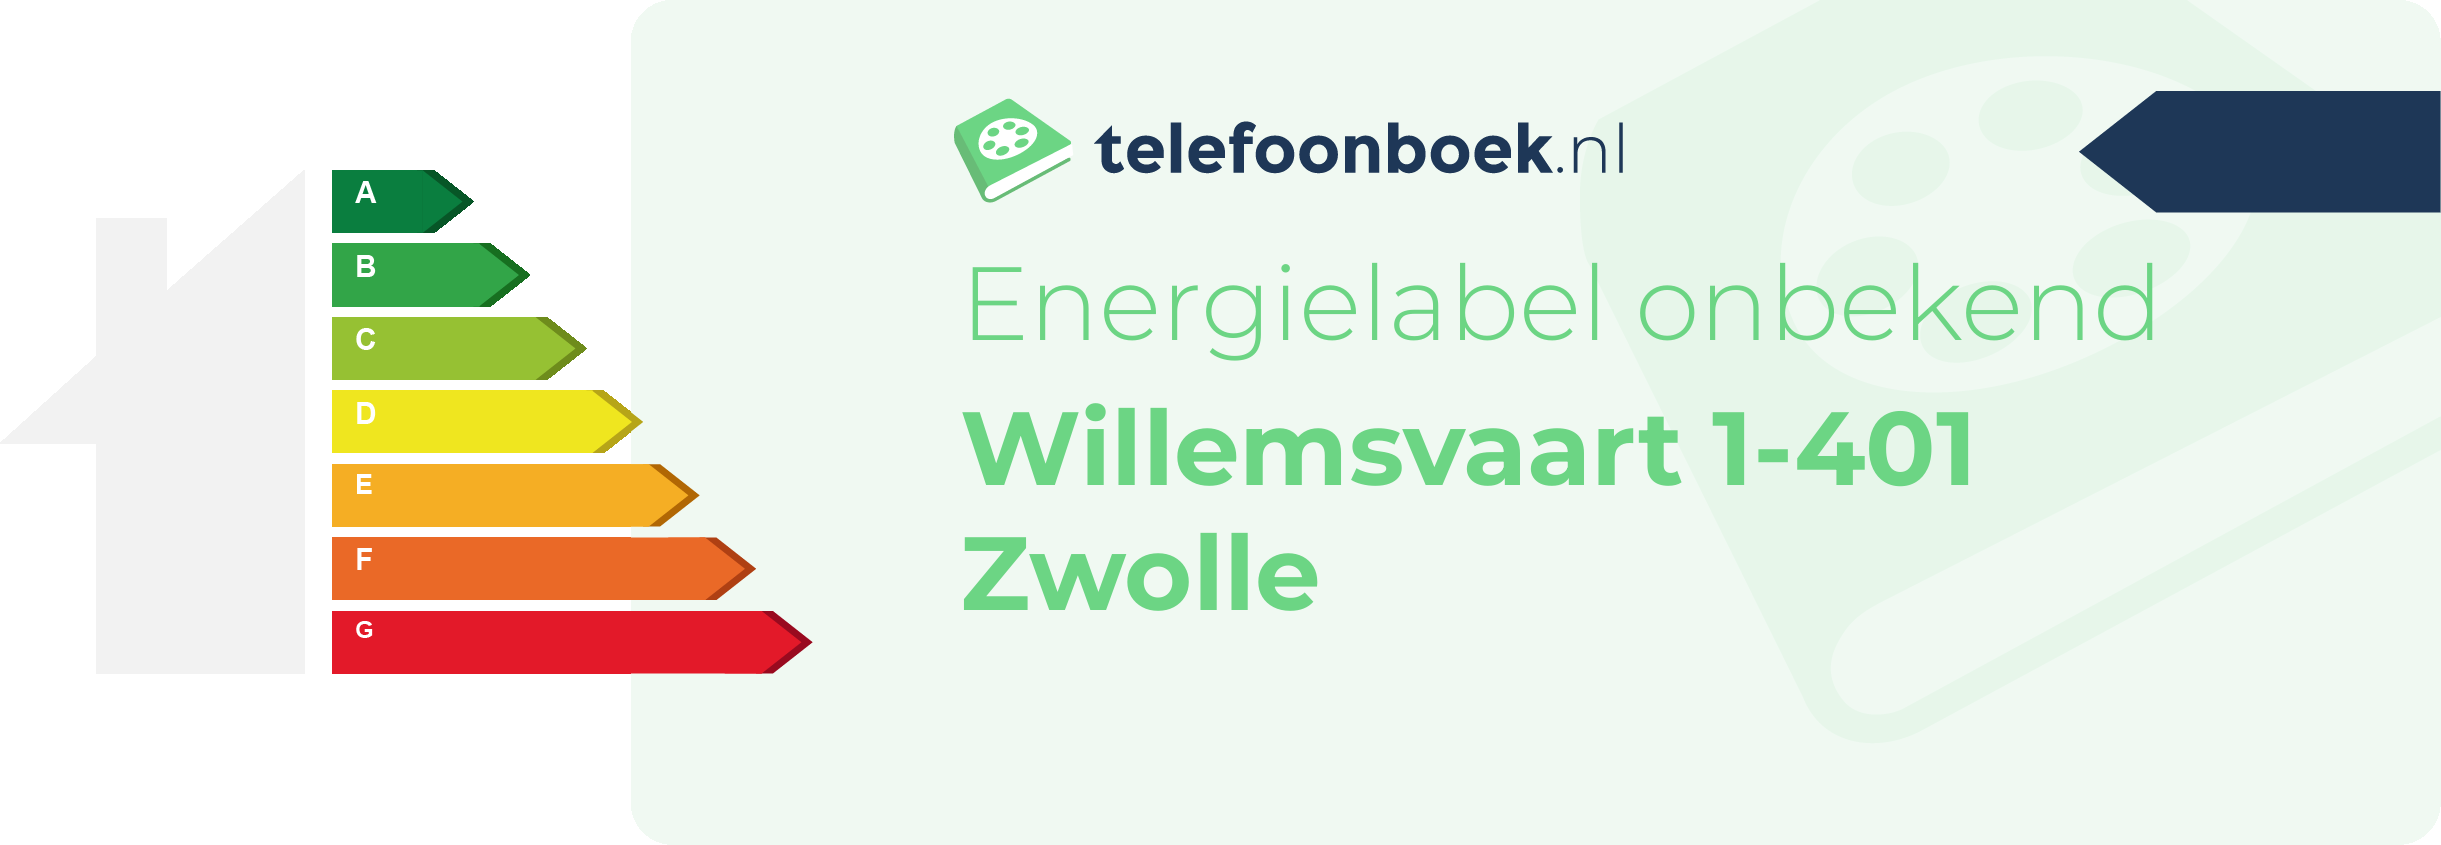 Energielabel Willemsvaart 1-401 Zwolle